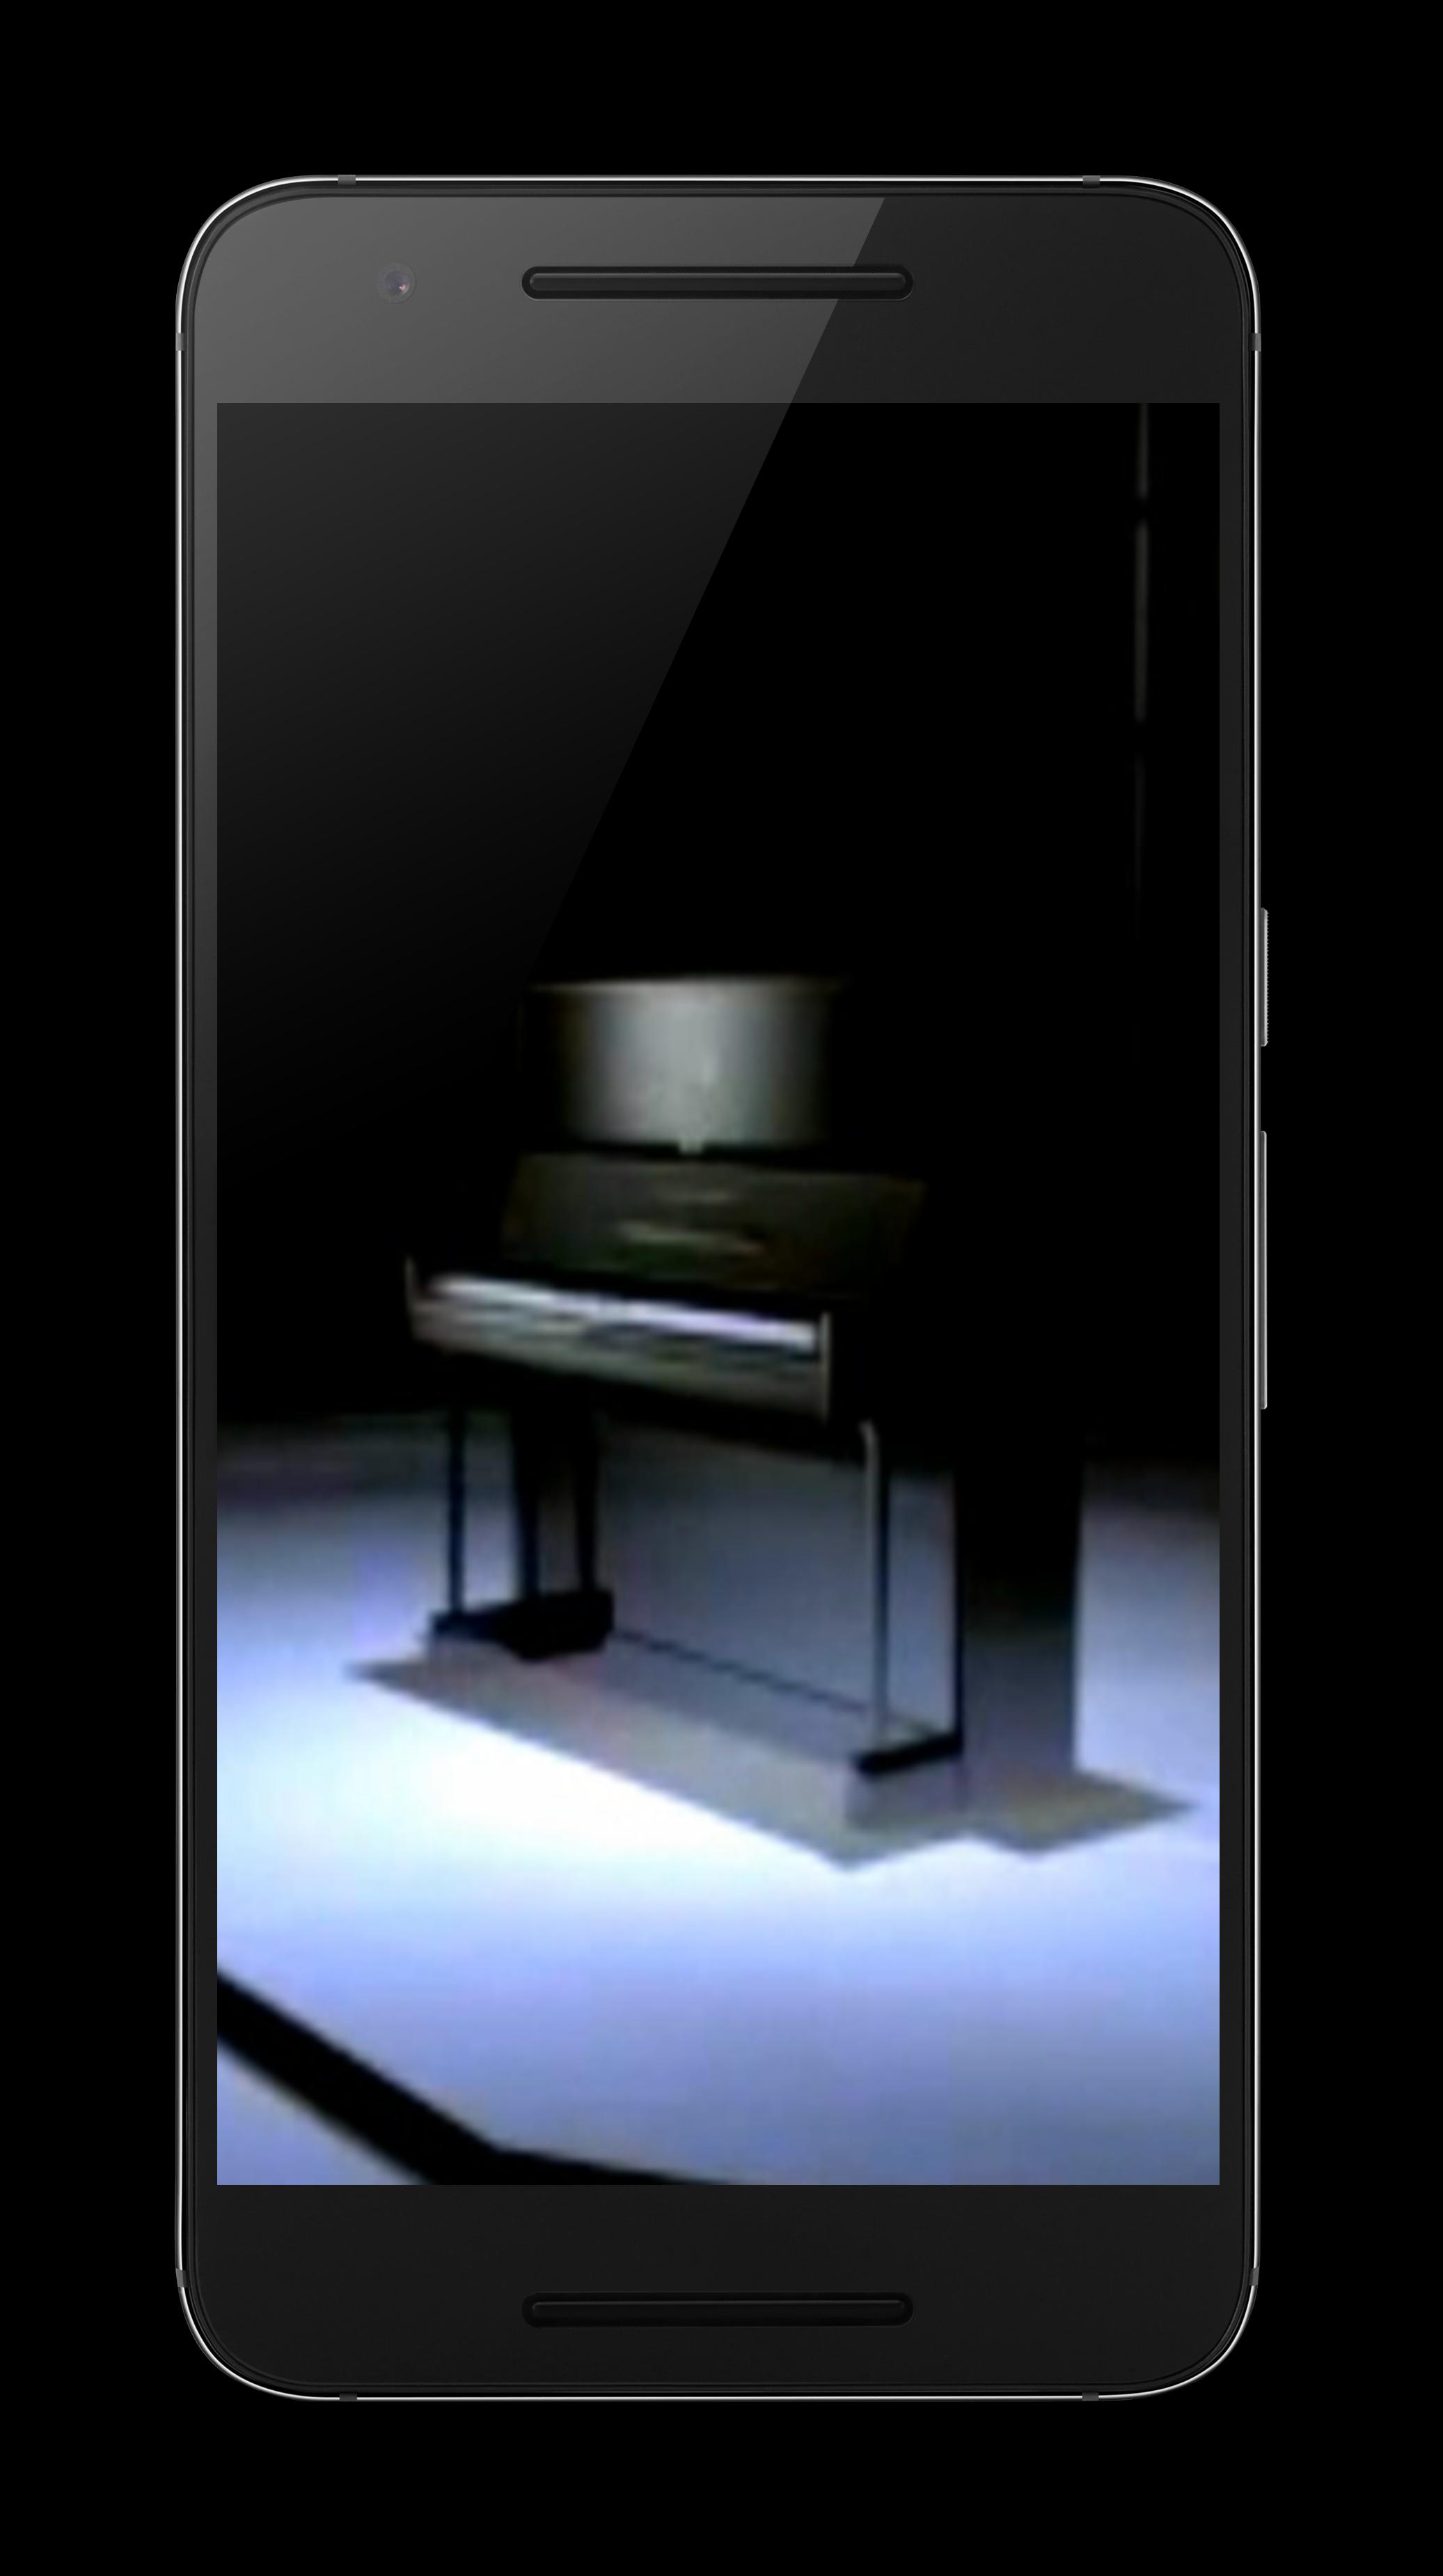 fond d'écran de piano pour android,produit,la technologie,électronique,gadget,table